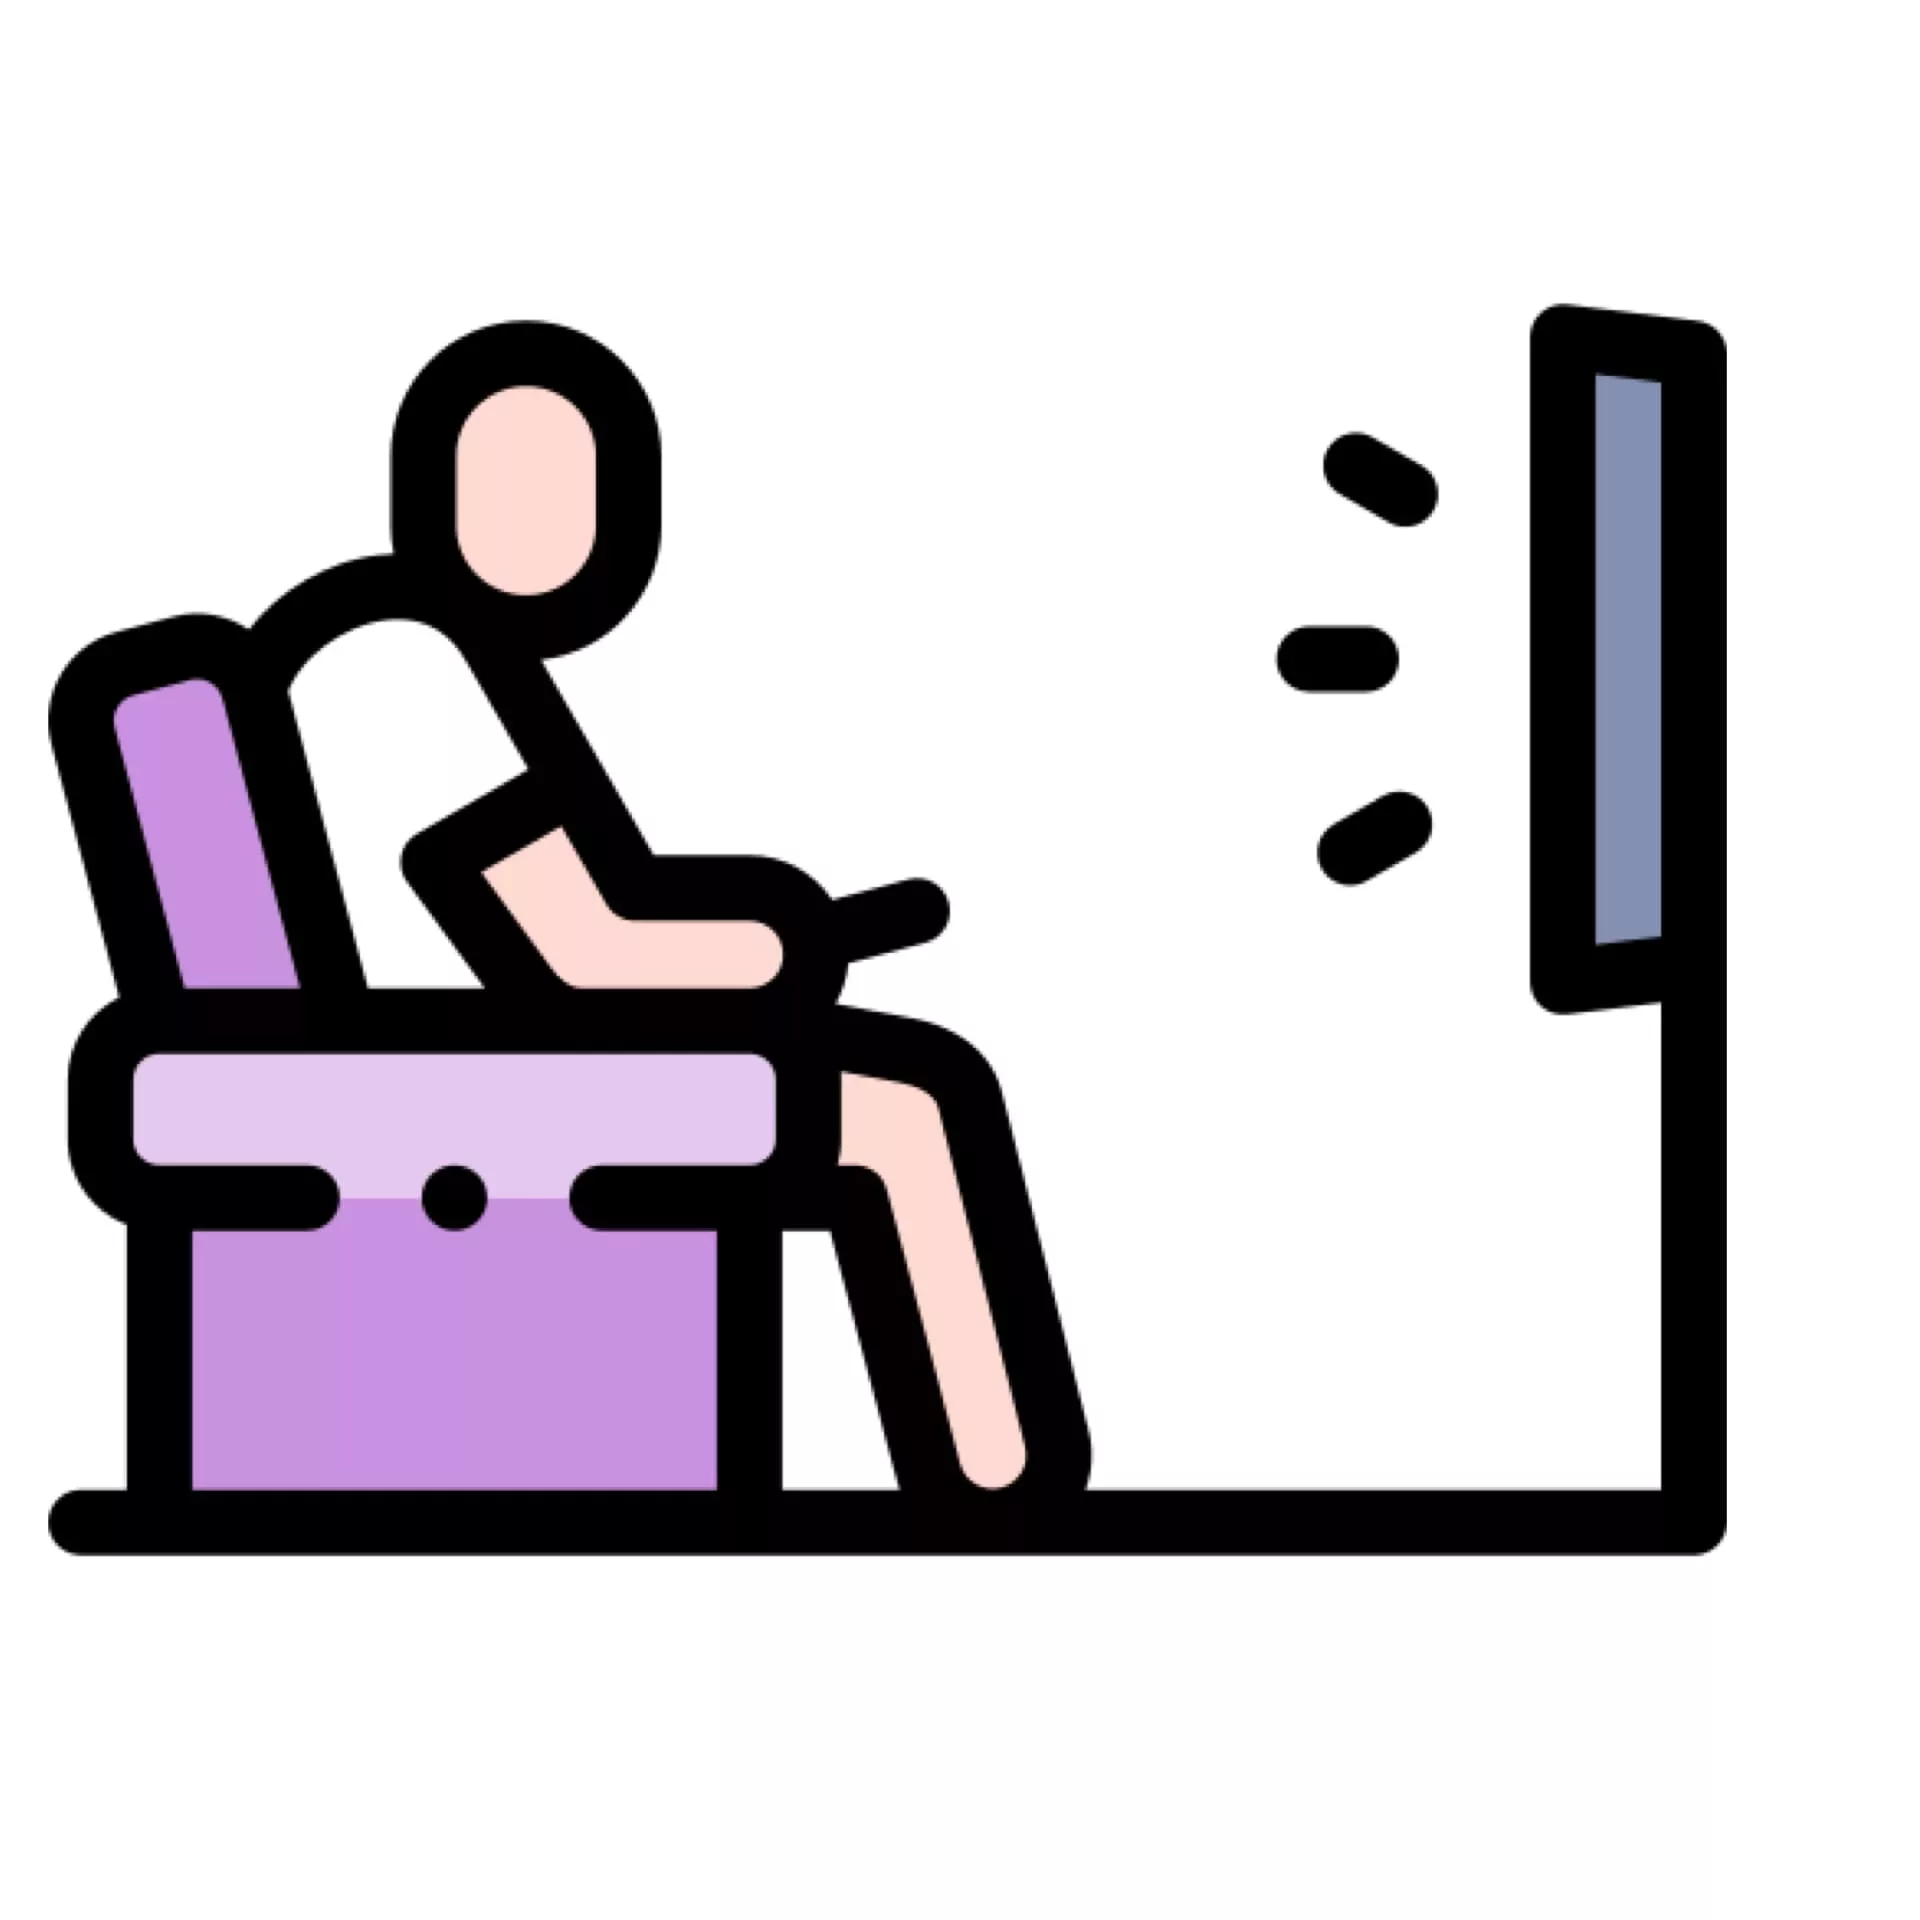 電動床好處之一-避免久坐或久站造成腰背痠痛